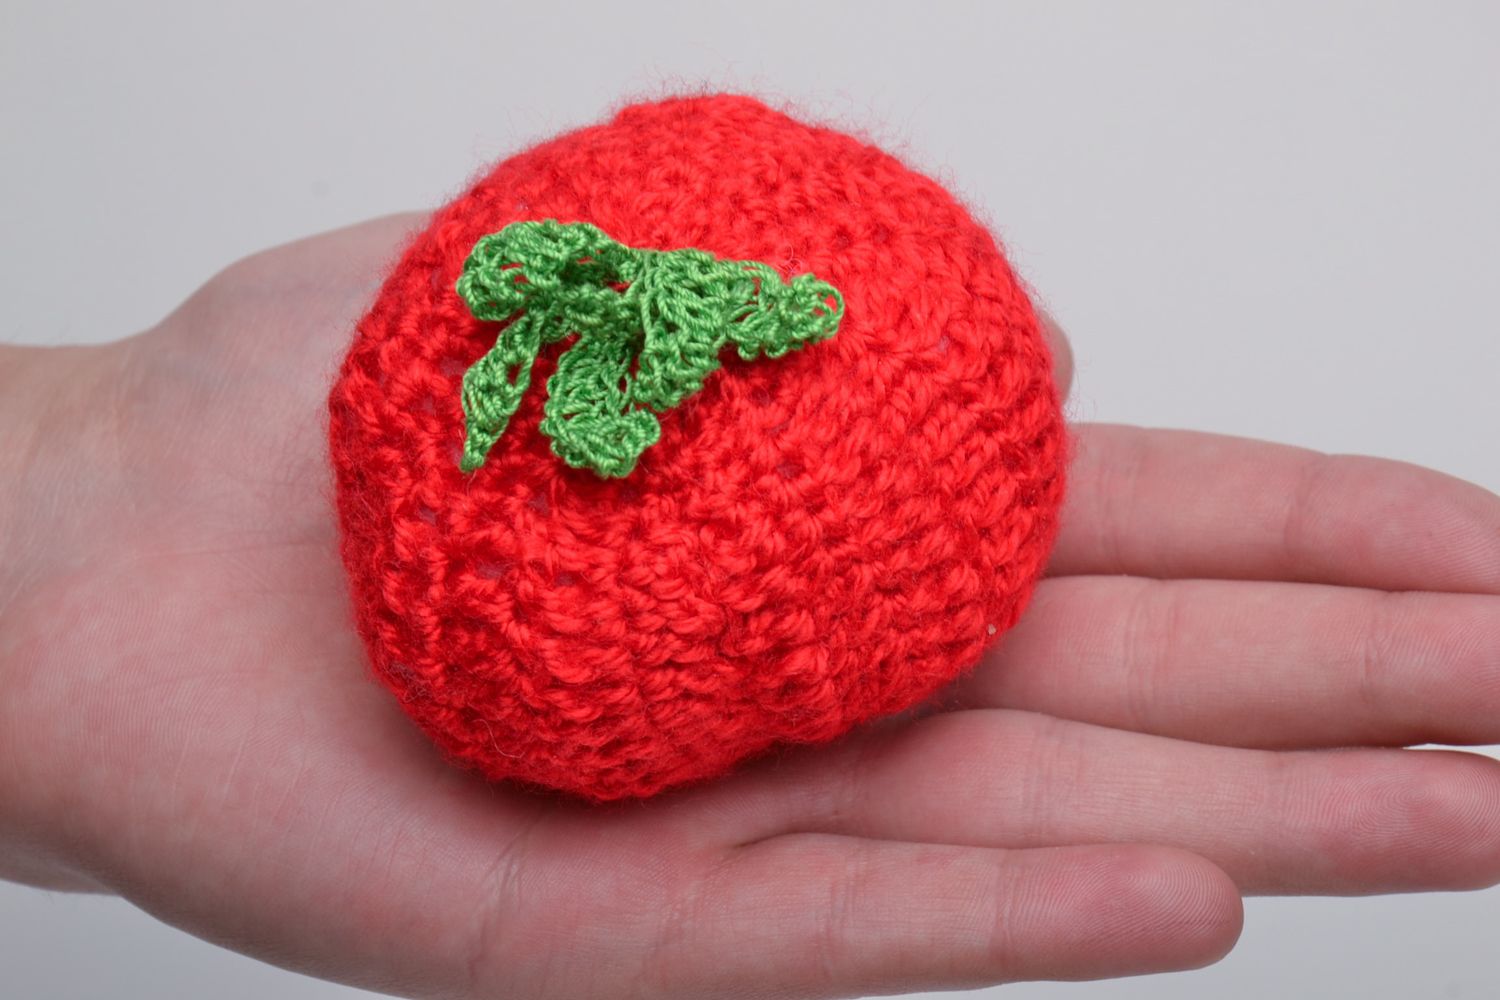 Soft crochet toy tomato photo 5